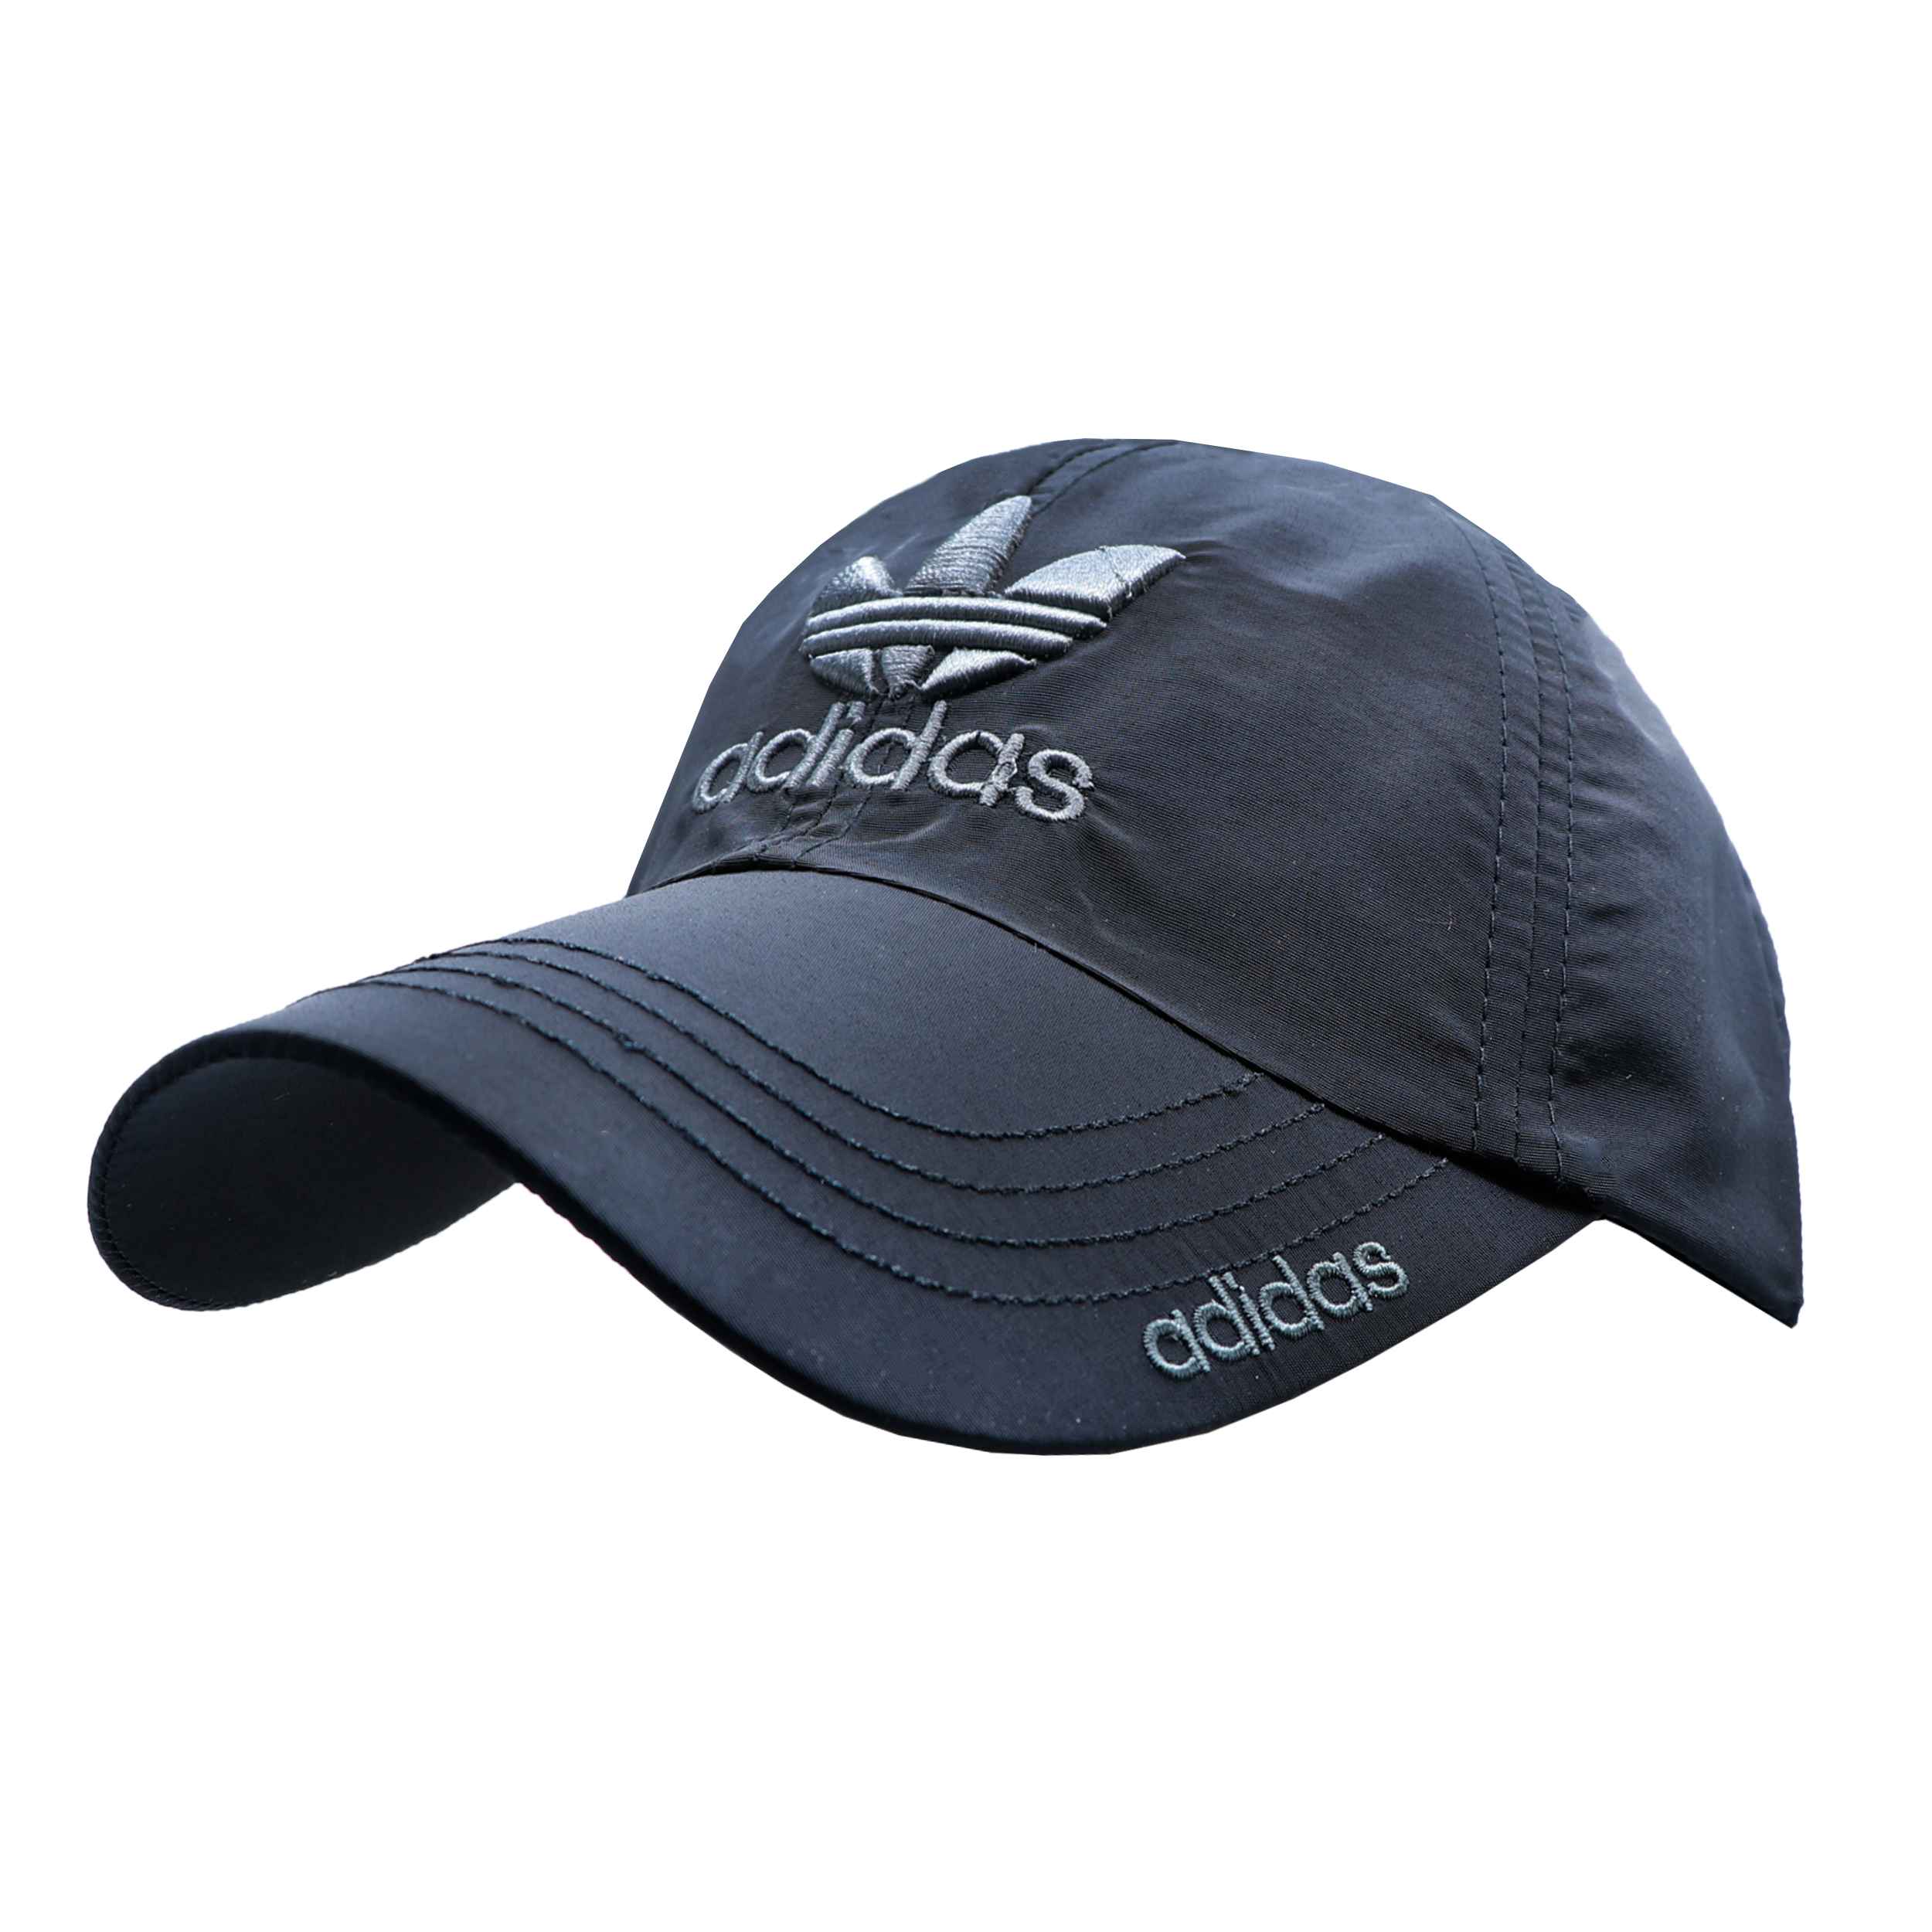 نکته خرید - قیمت روز کلاه کپ مدل ADO کد 51526 خرید